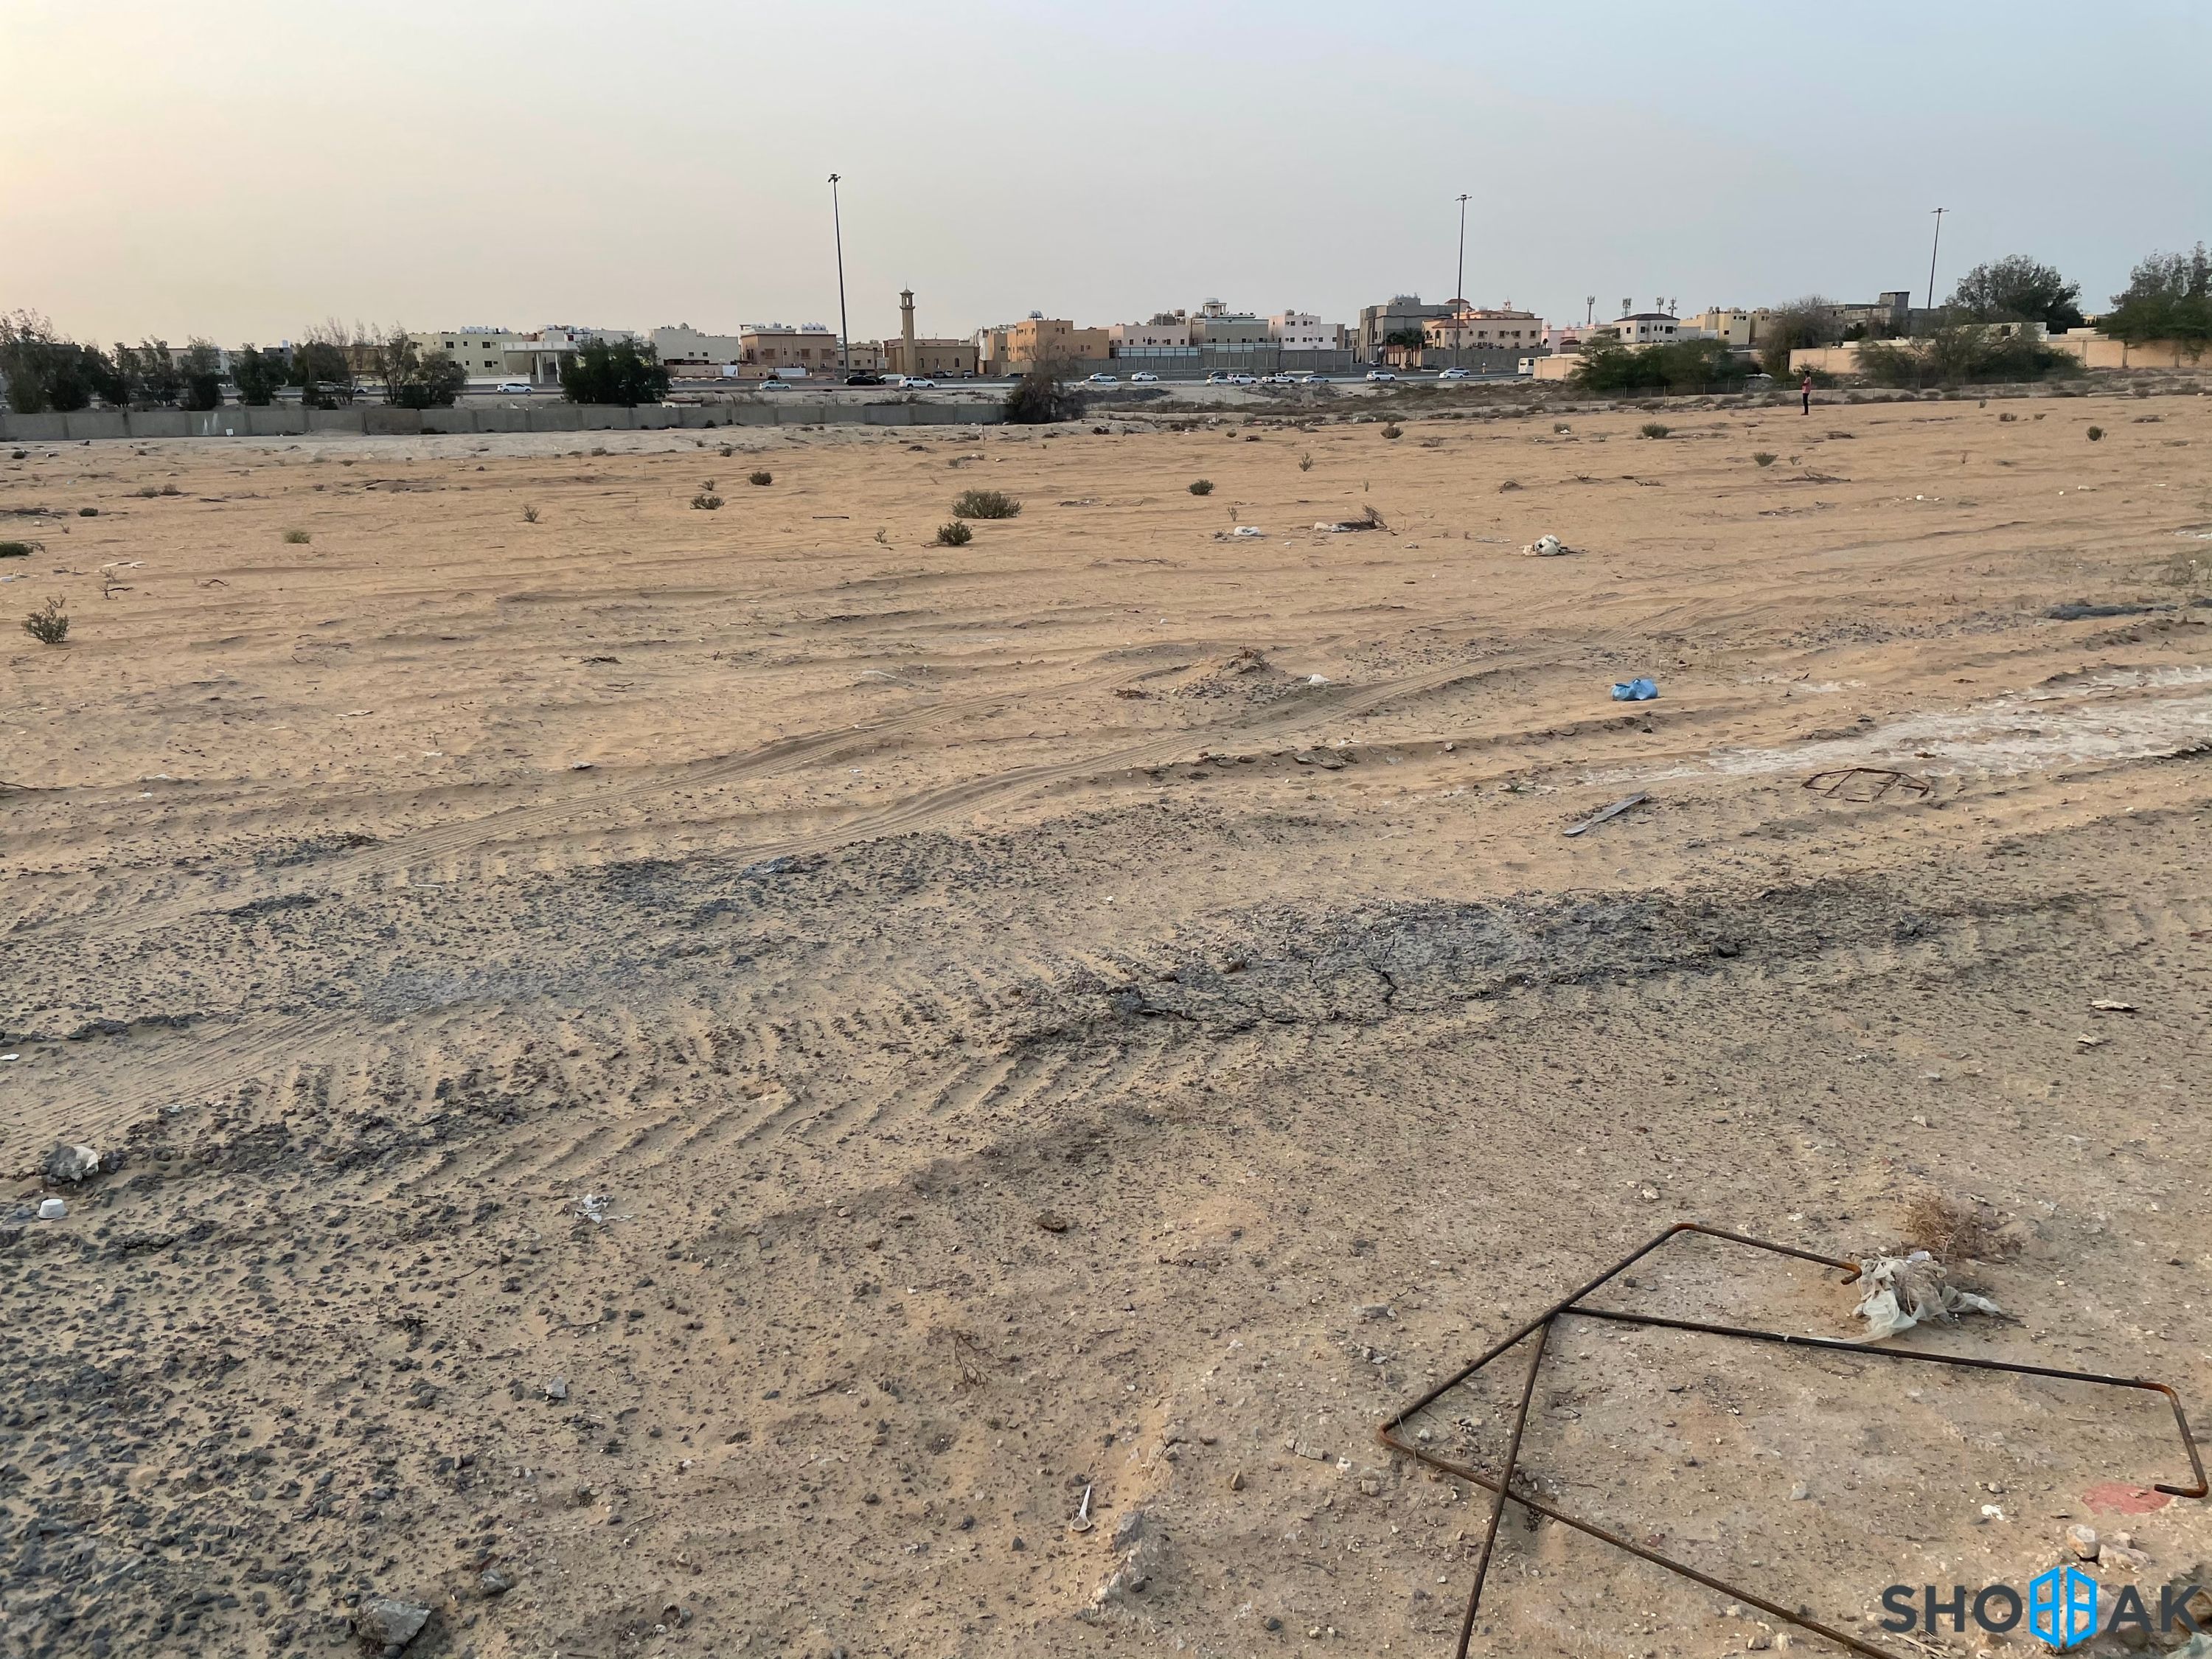 ارض للبيع بالدمام حي الندى شارع بالقاسم الزواوي  شباك السعودية